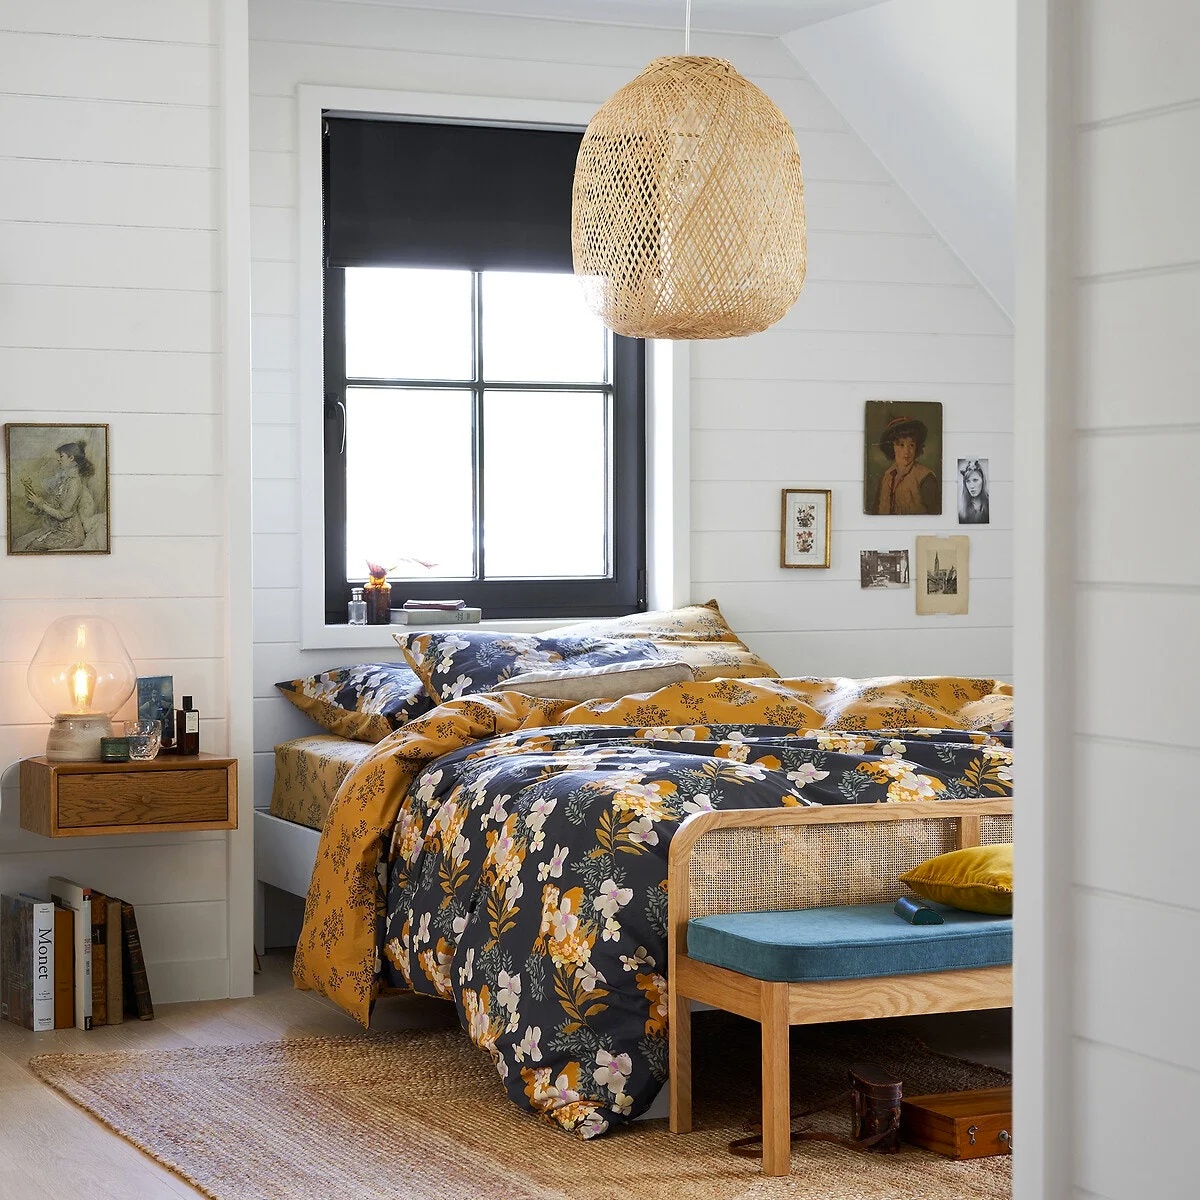 Banc bout de lit : 15 meubles pratiques et esthétiques au top pour votre  chambre - NuageDeco